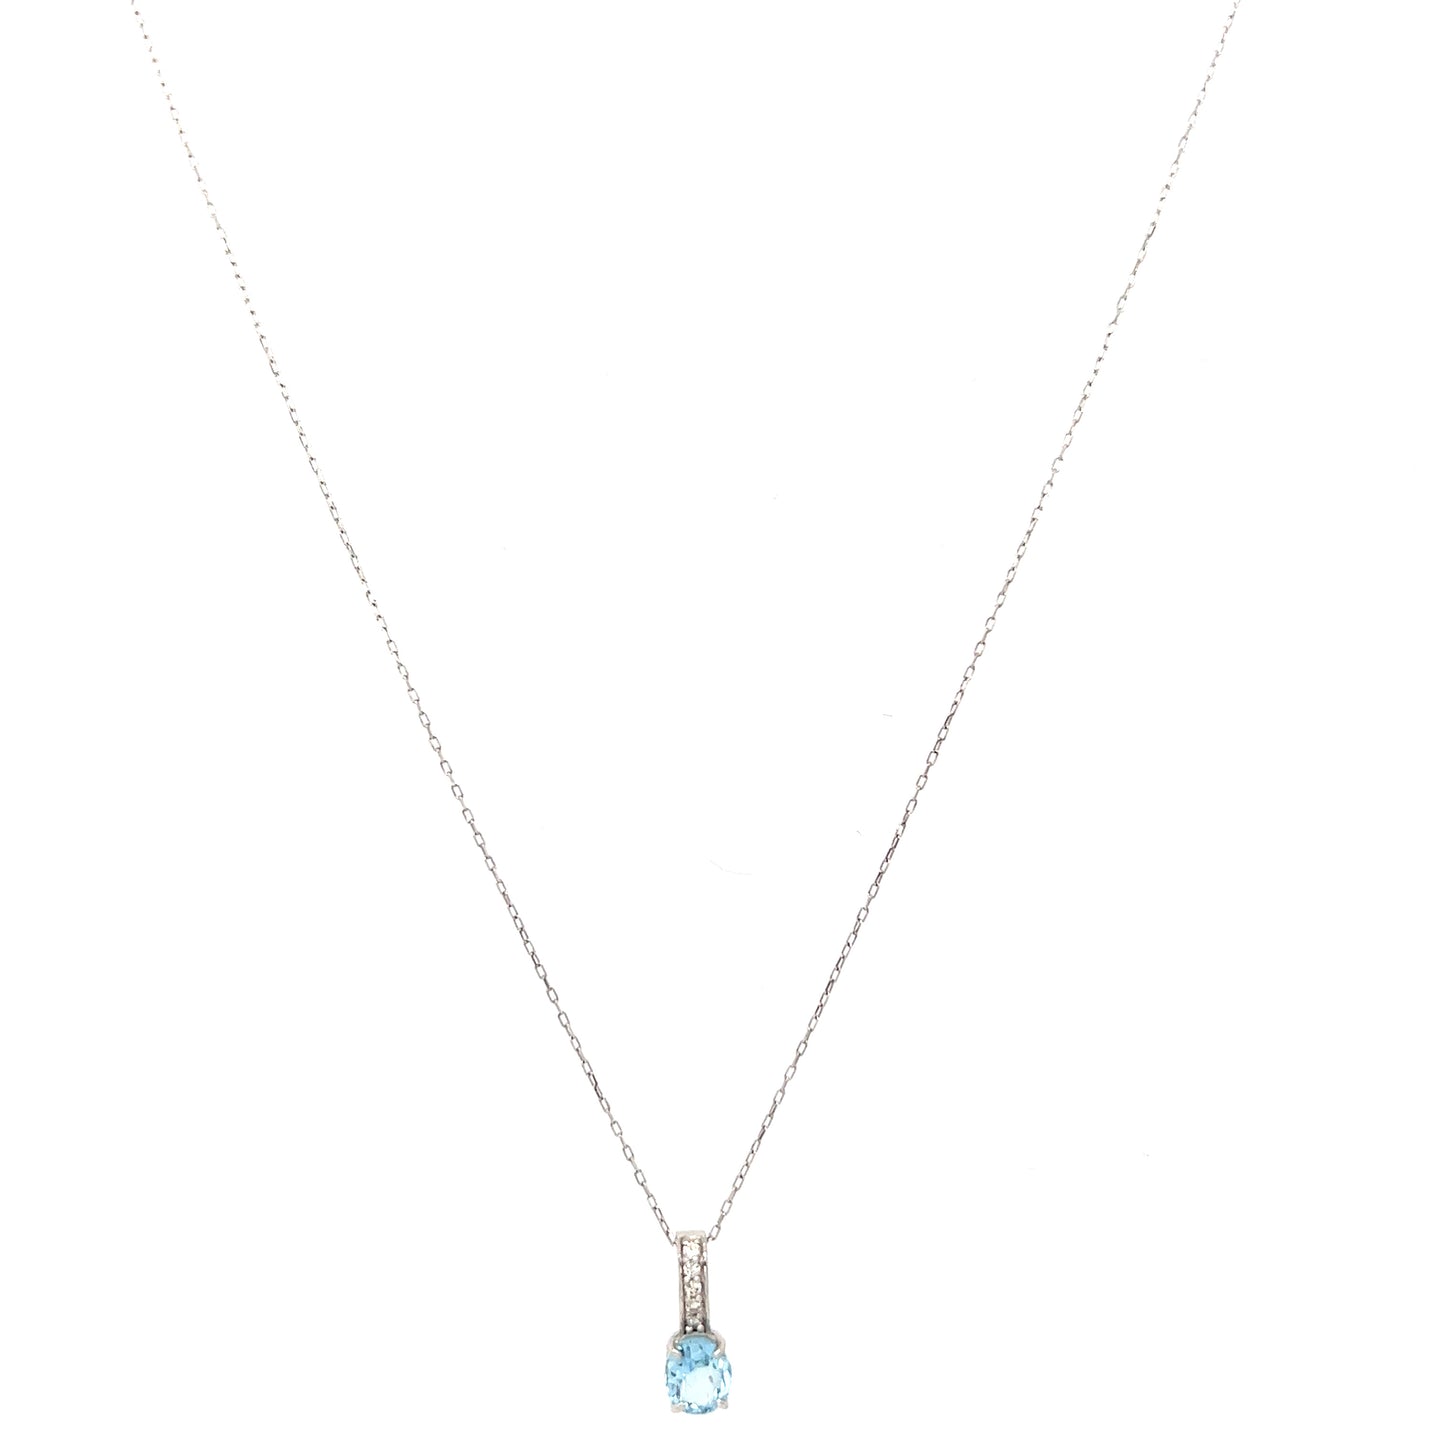 Aquamarine diamond necklace